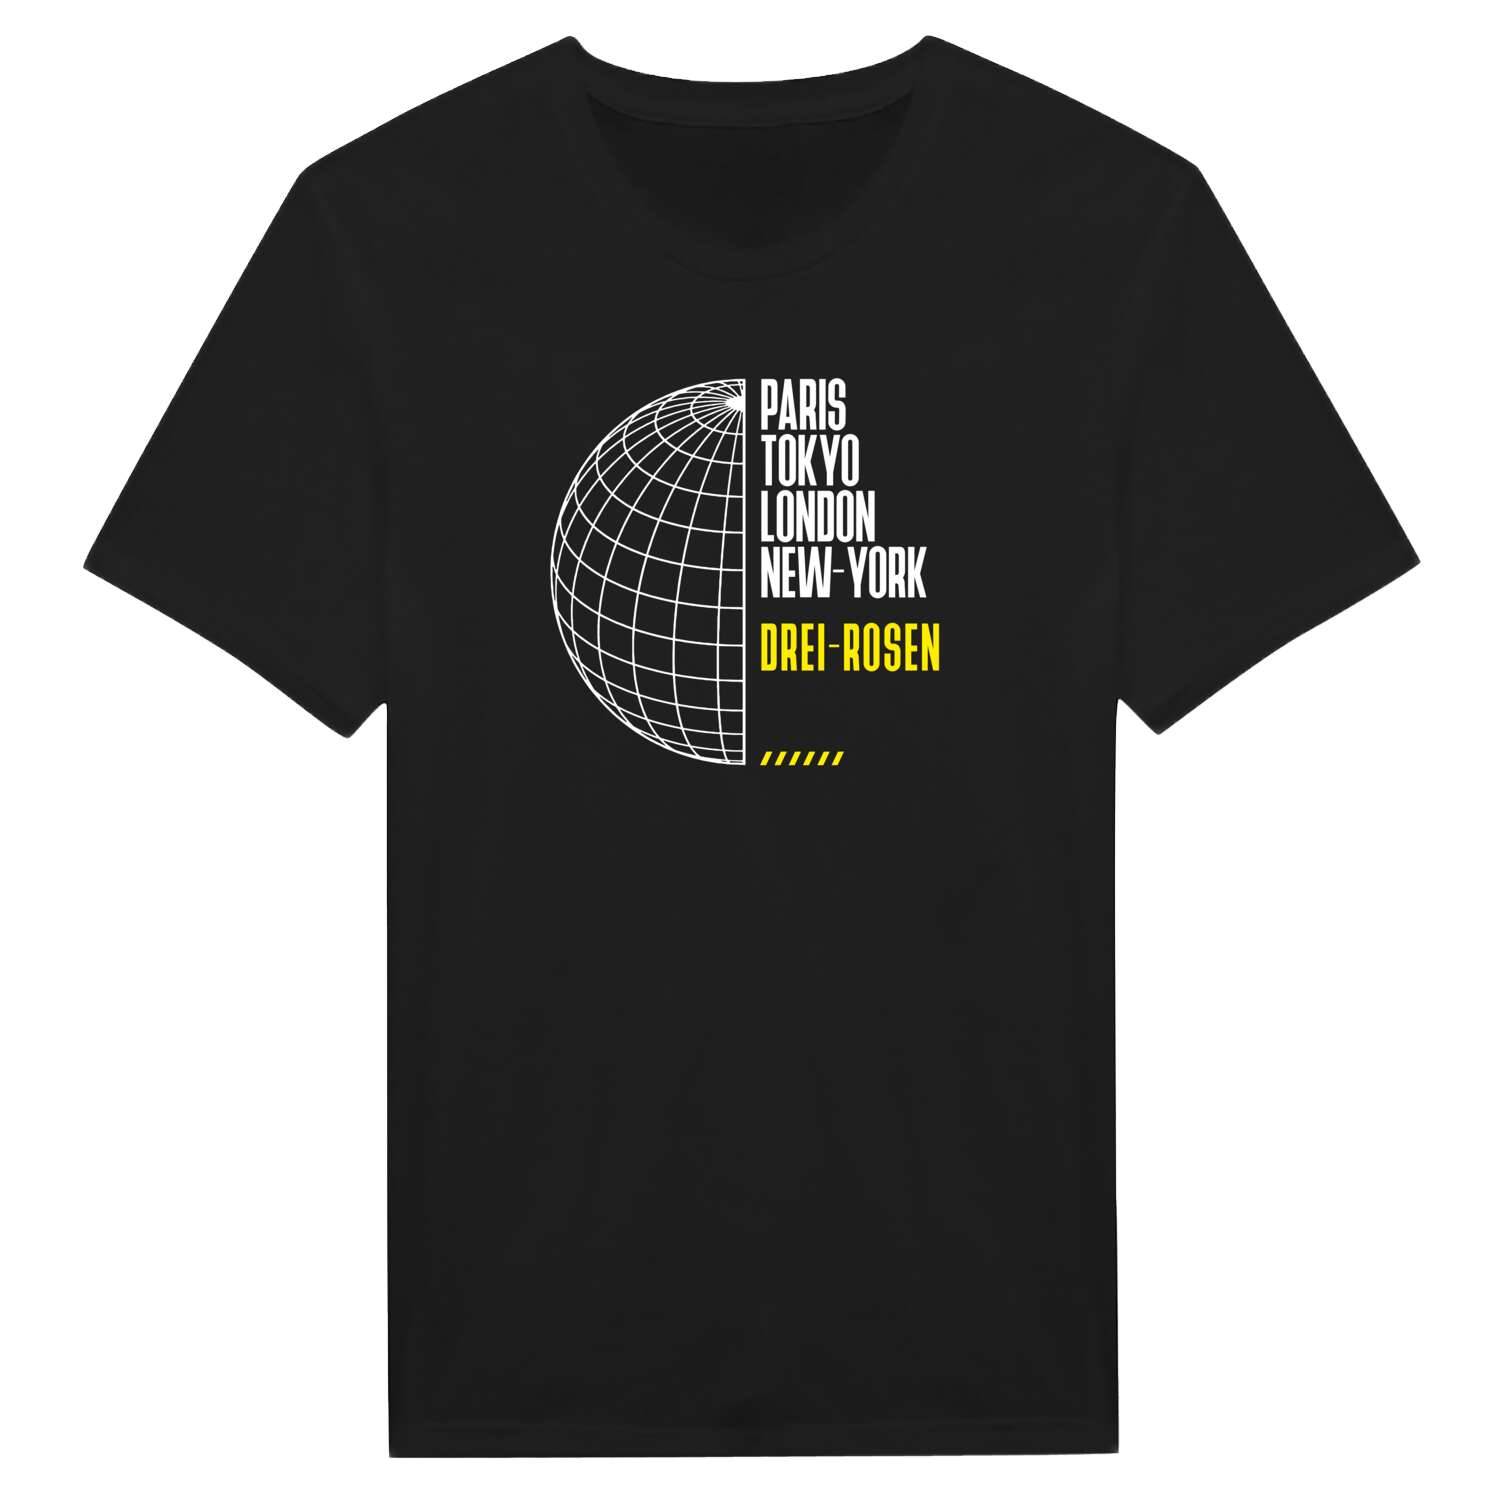 Drei-Rosen T-Shirt »Paris Tokyo London«